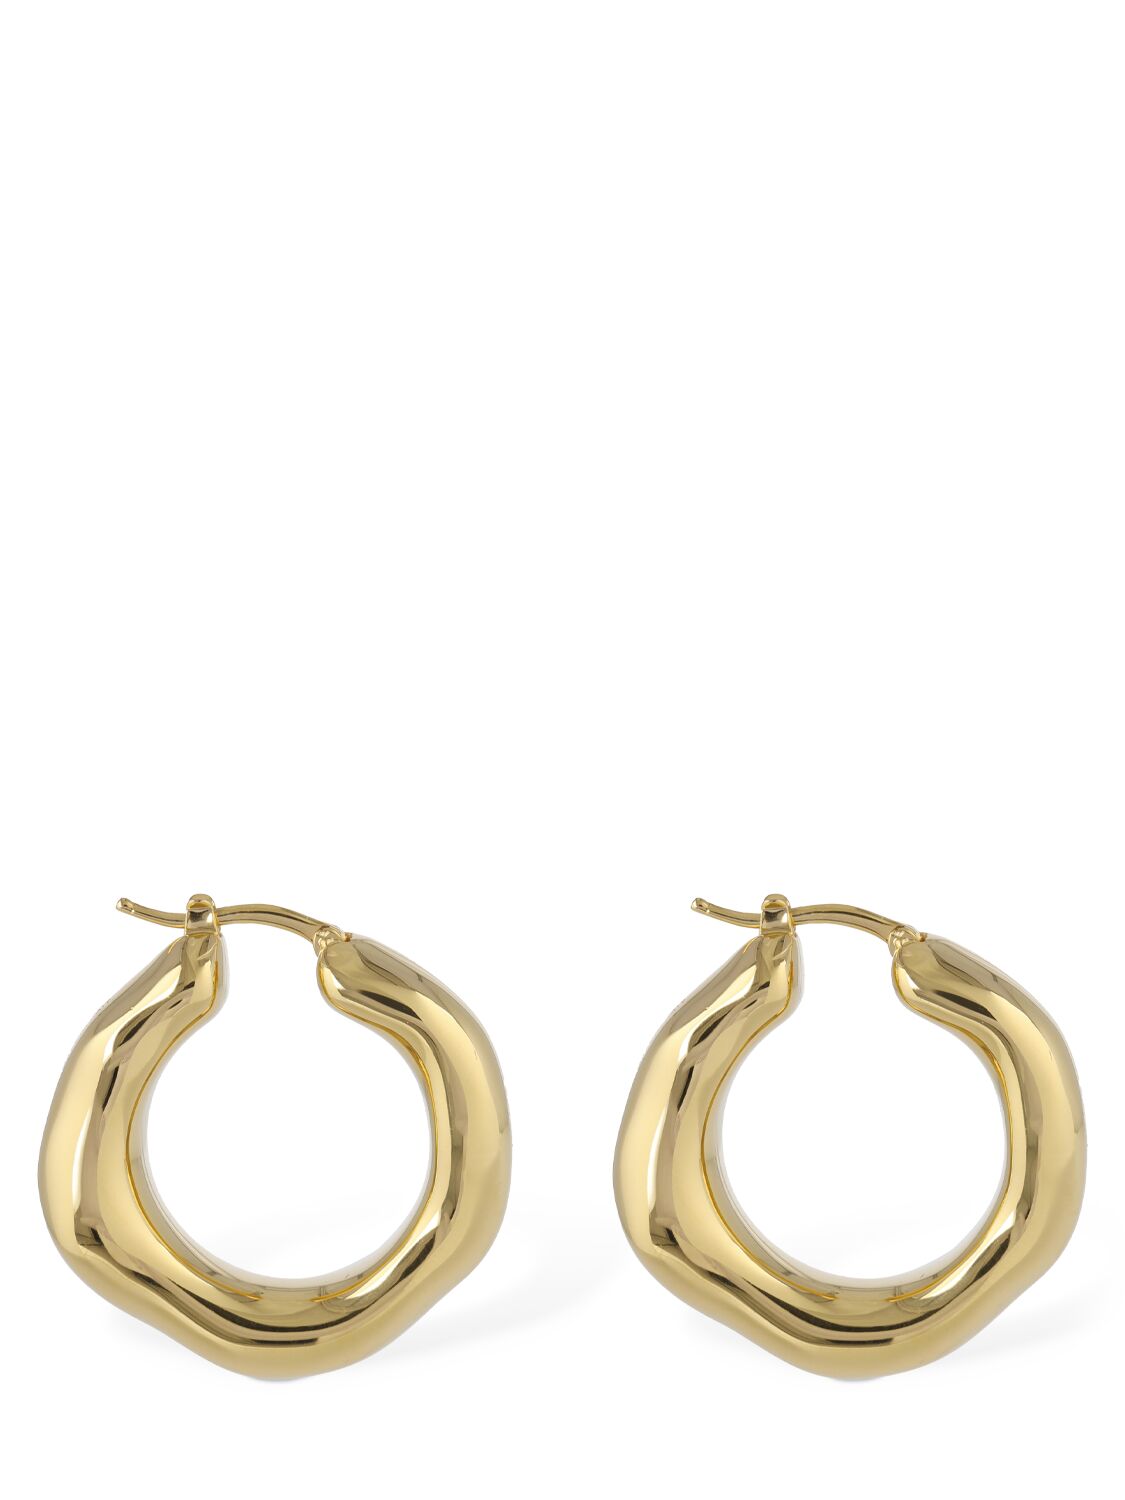 New Lightness 1 Hoop Earrings In Gold